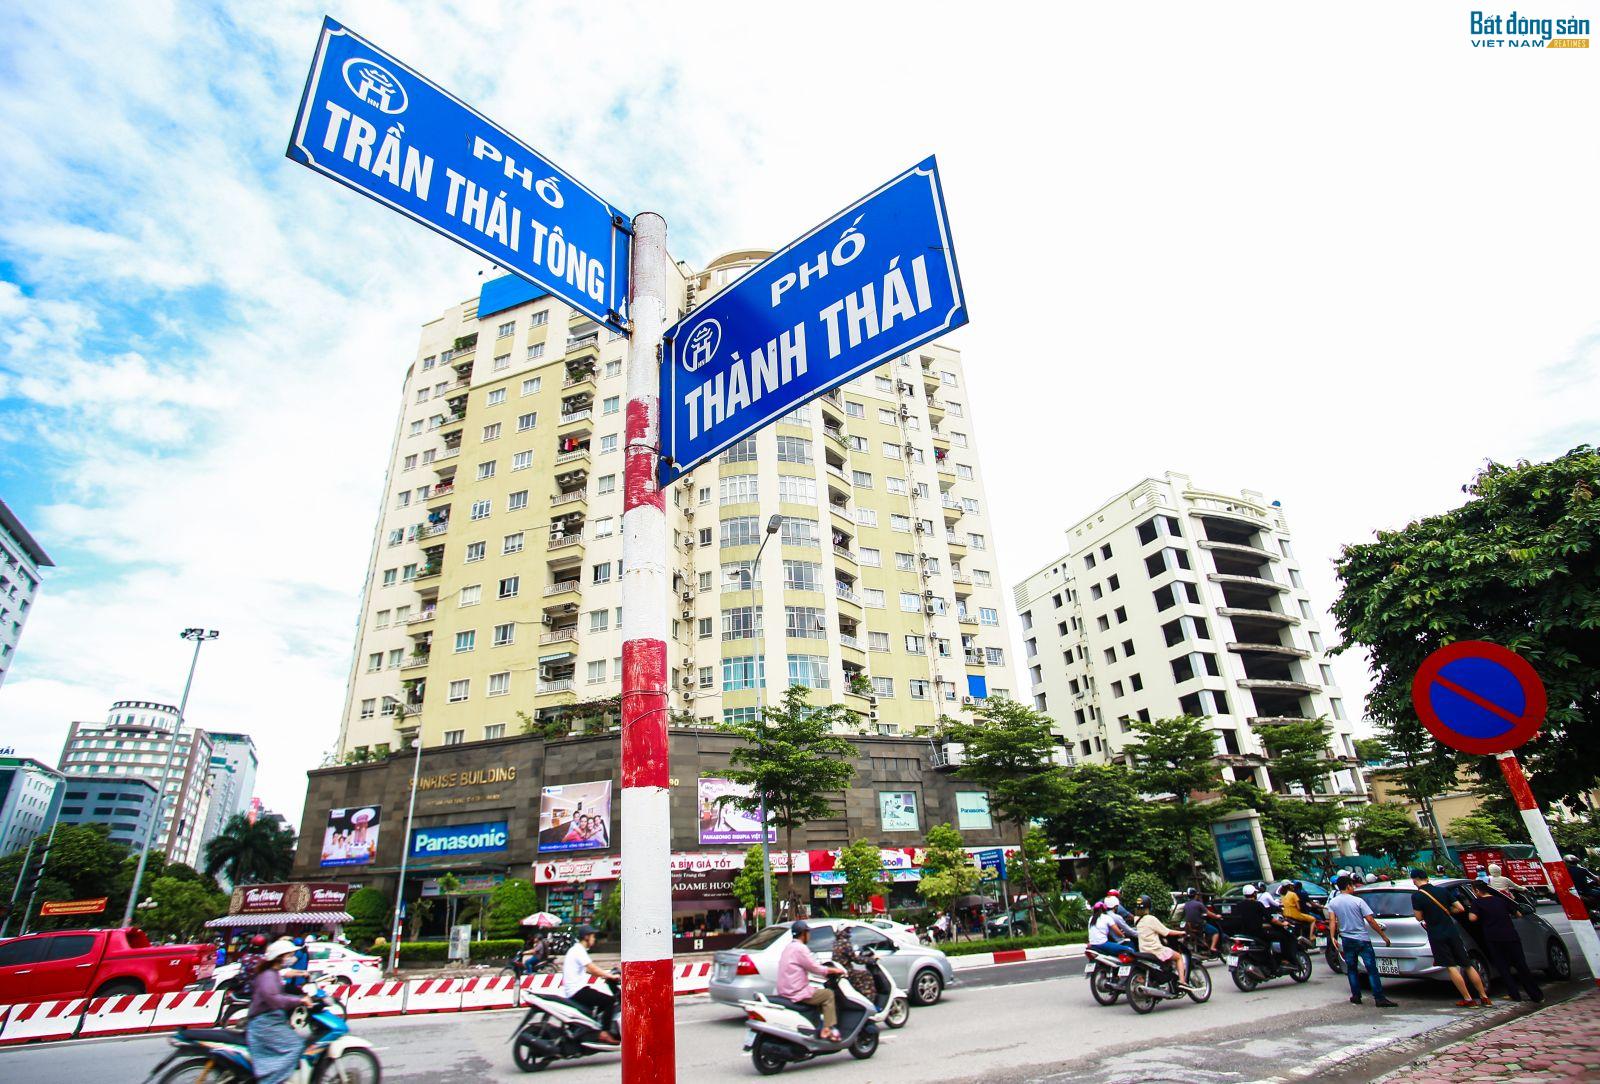 Dự án Lod Building là tòa nhà văn phòng nằm trên đường Trần Thái Tông, một trong những tuyến phố phát triển thương mại và văn phòng cho thuê lớn nhất của Hà Nội